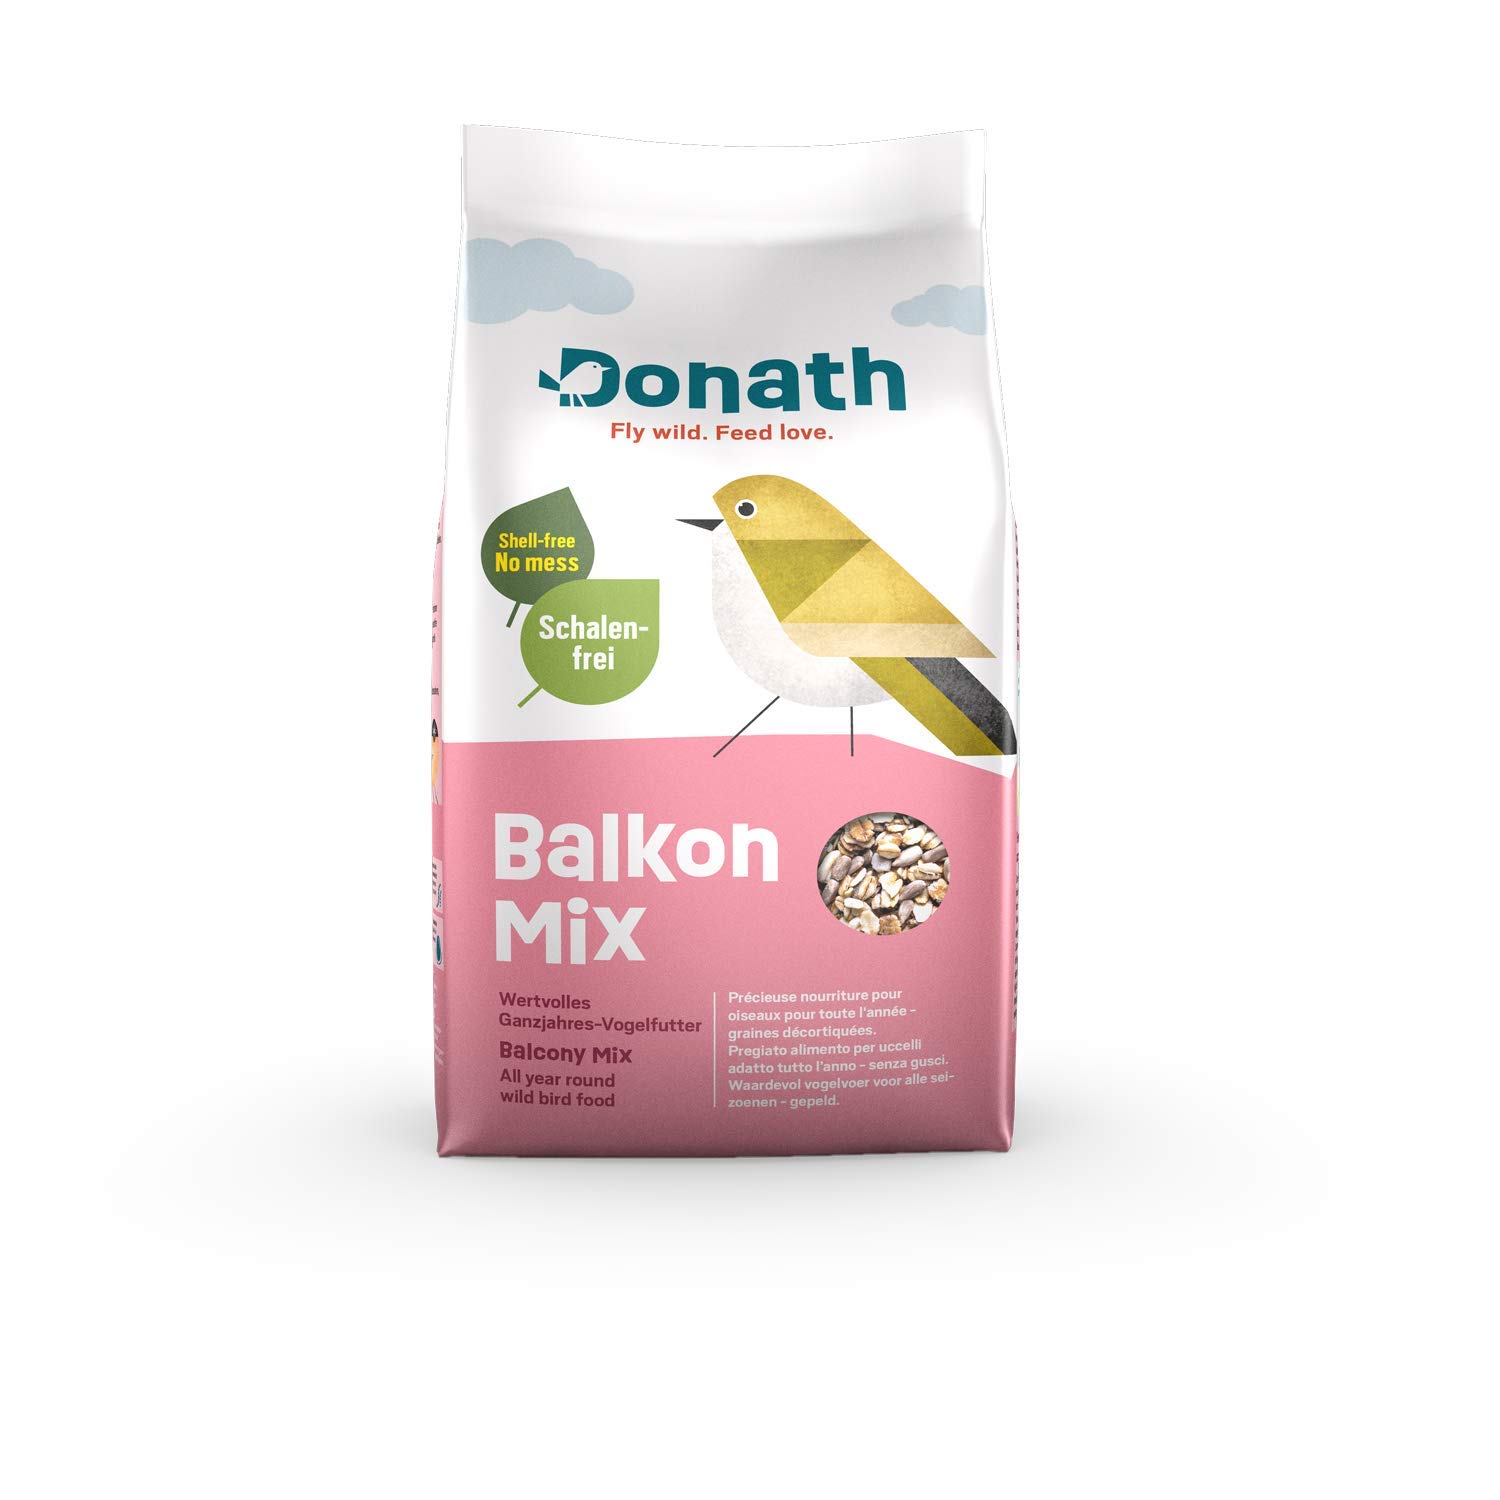 Donath Balkon Mix - schalenfreie Mischung für einen sauberen Balkon - wertvolles Ganzjahres Wildvogelfutter - aus unserer Manufaktur in Süddeutschland - 9 Kg